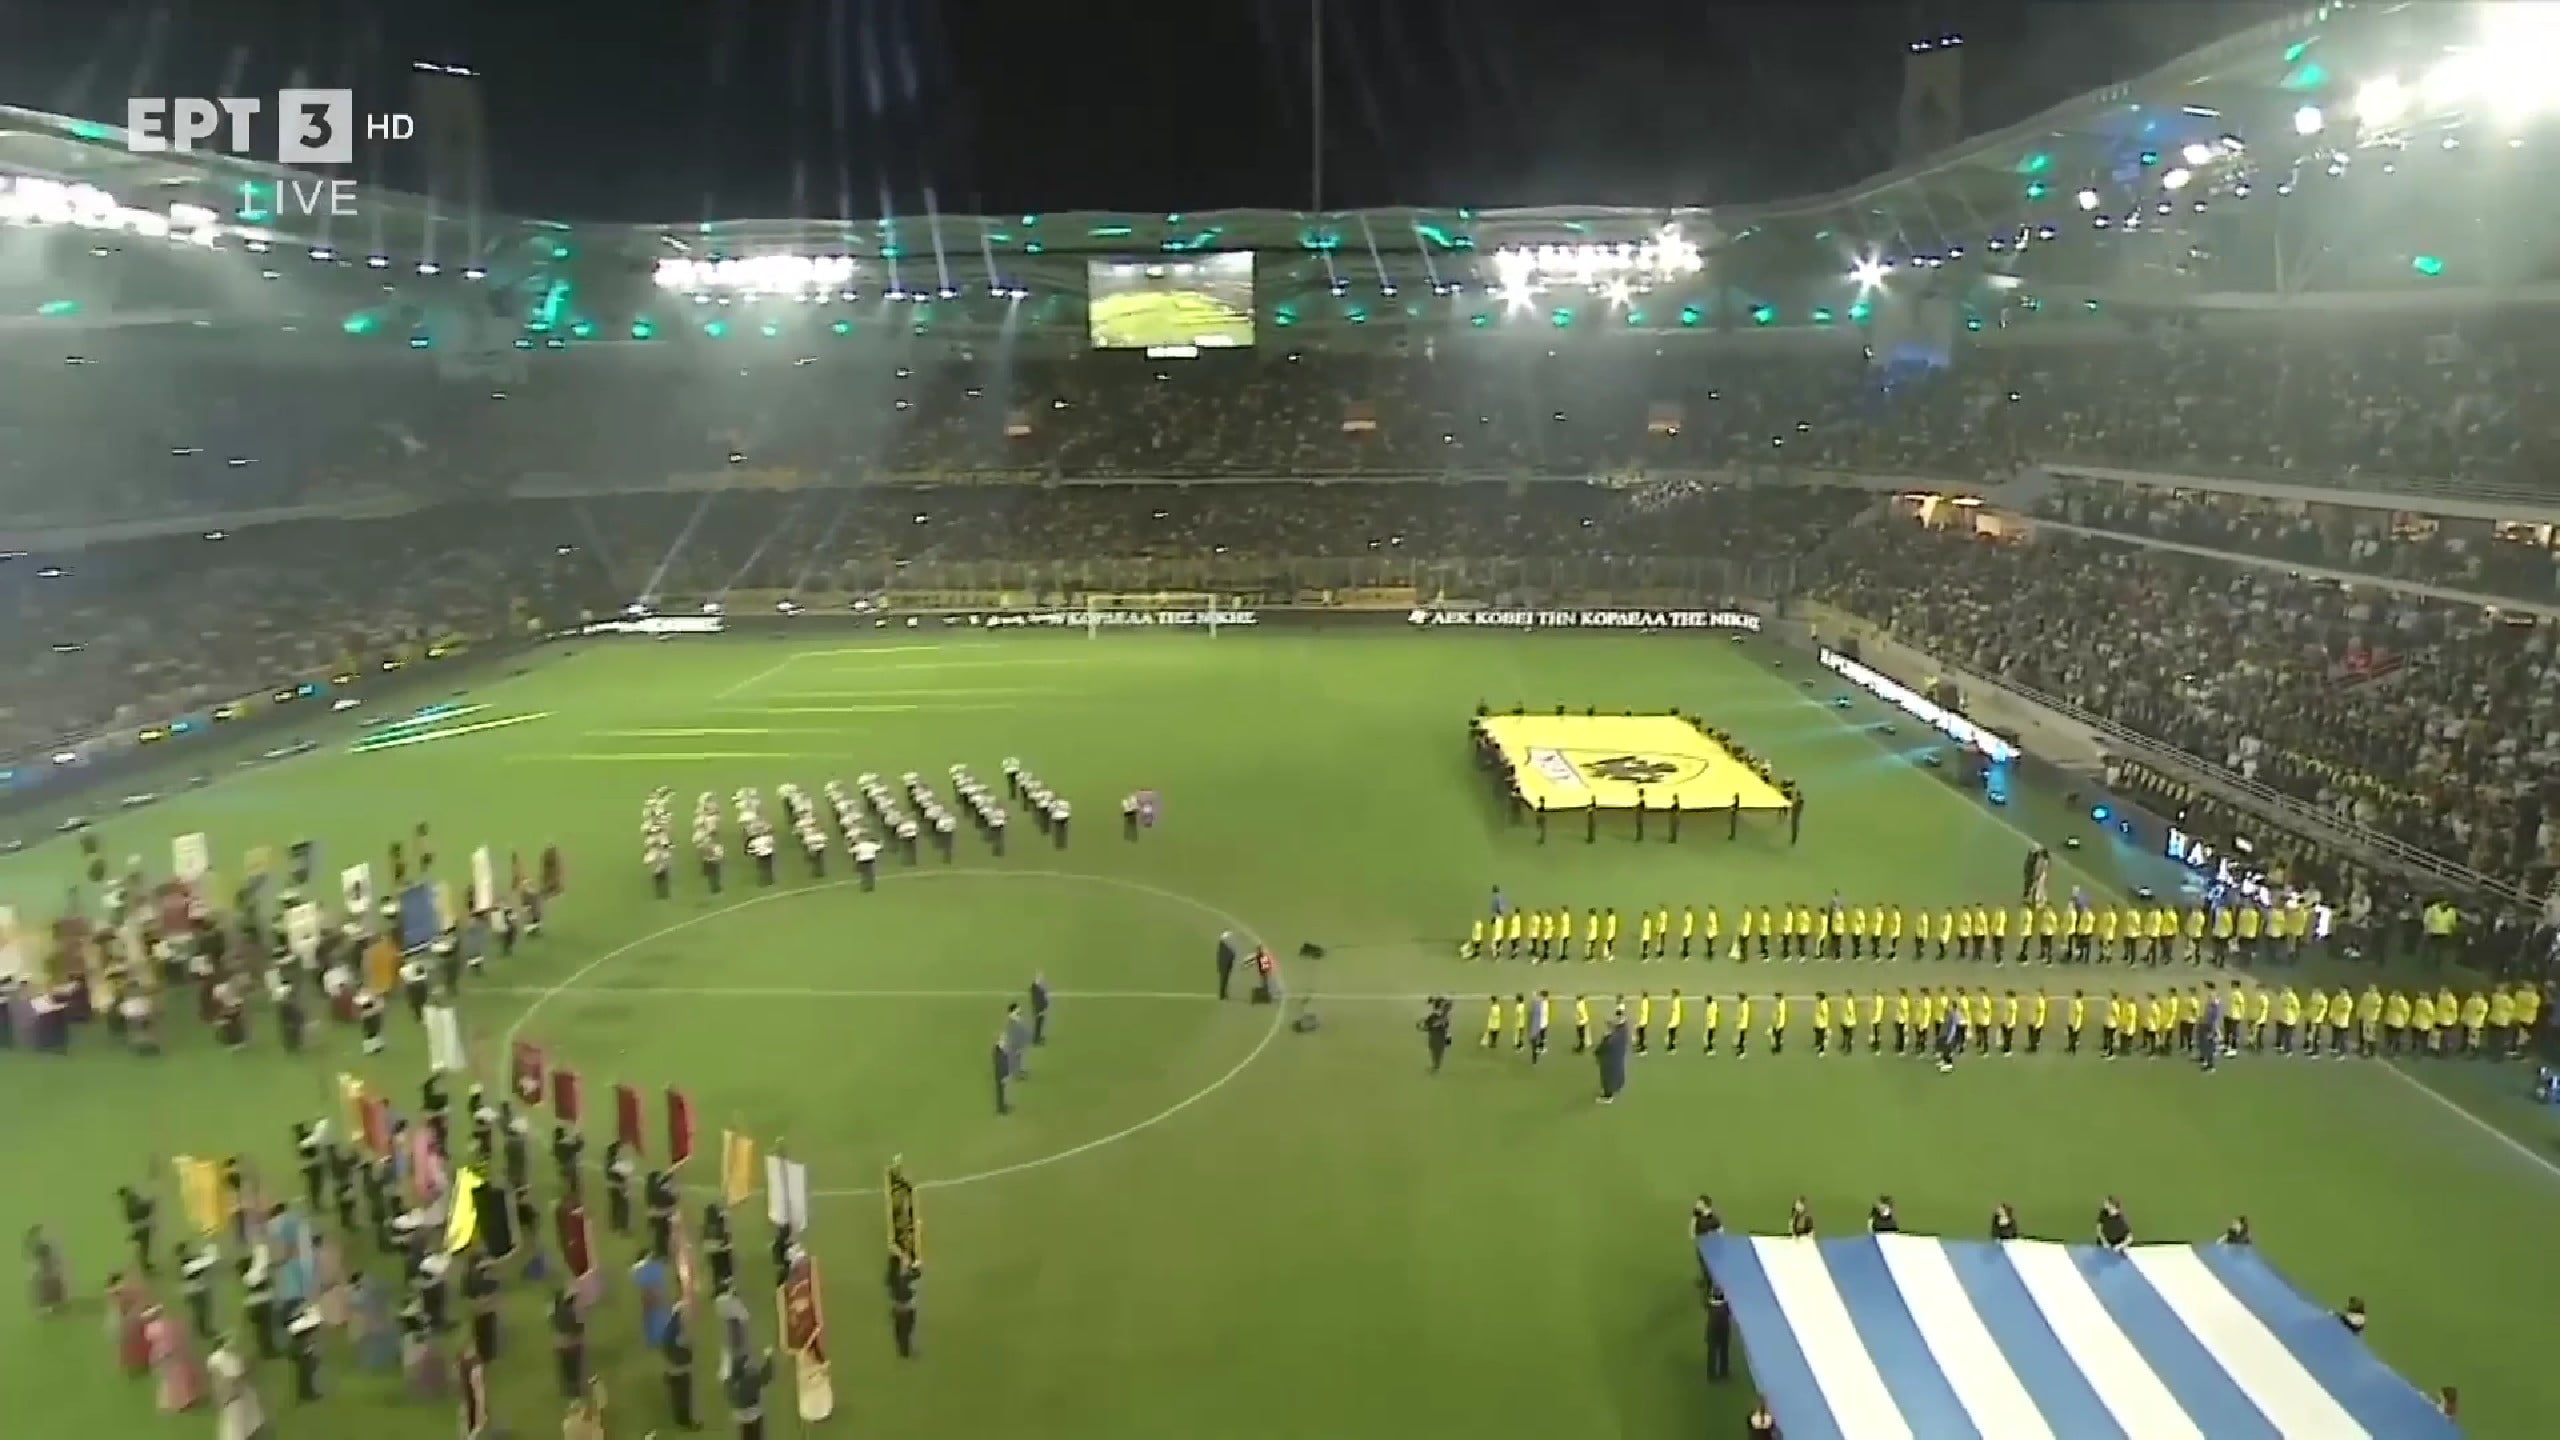 Ανατριχίλα! Οι οπαδοί της ΑΕΚ ψάλλουν εν χορώ τον εθνικό ύμνο στην Αγιά Σοφιά (ΒΙΝΤΕΟ)